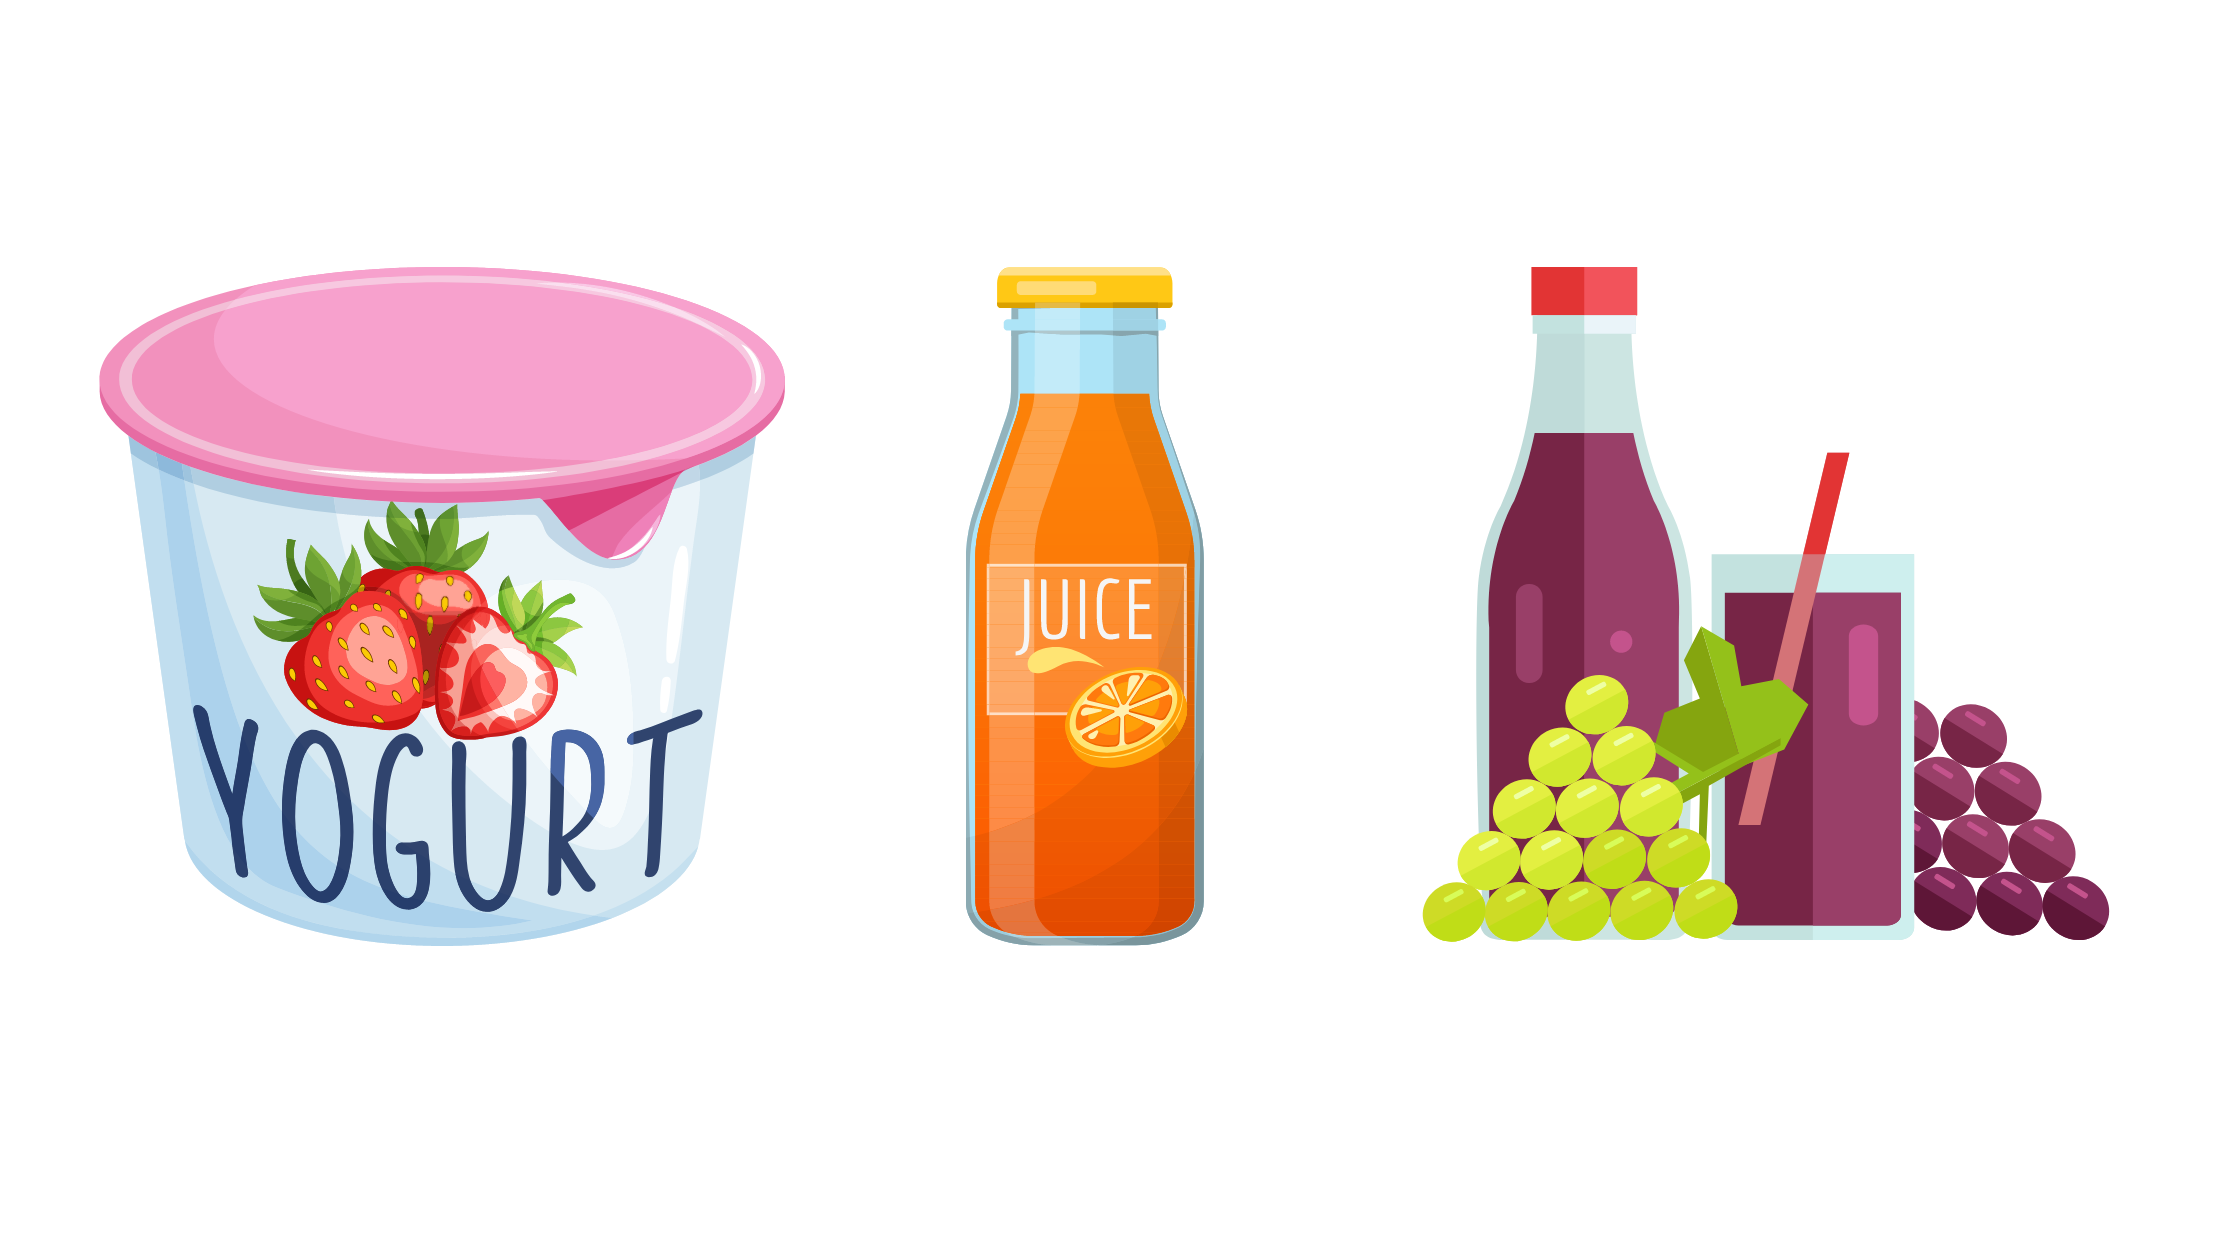 Yogurt, succhi confezionati e succo d’uva sono alimenti che contengono aspartame